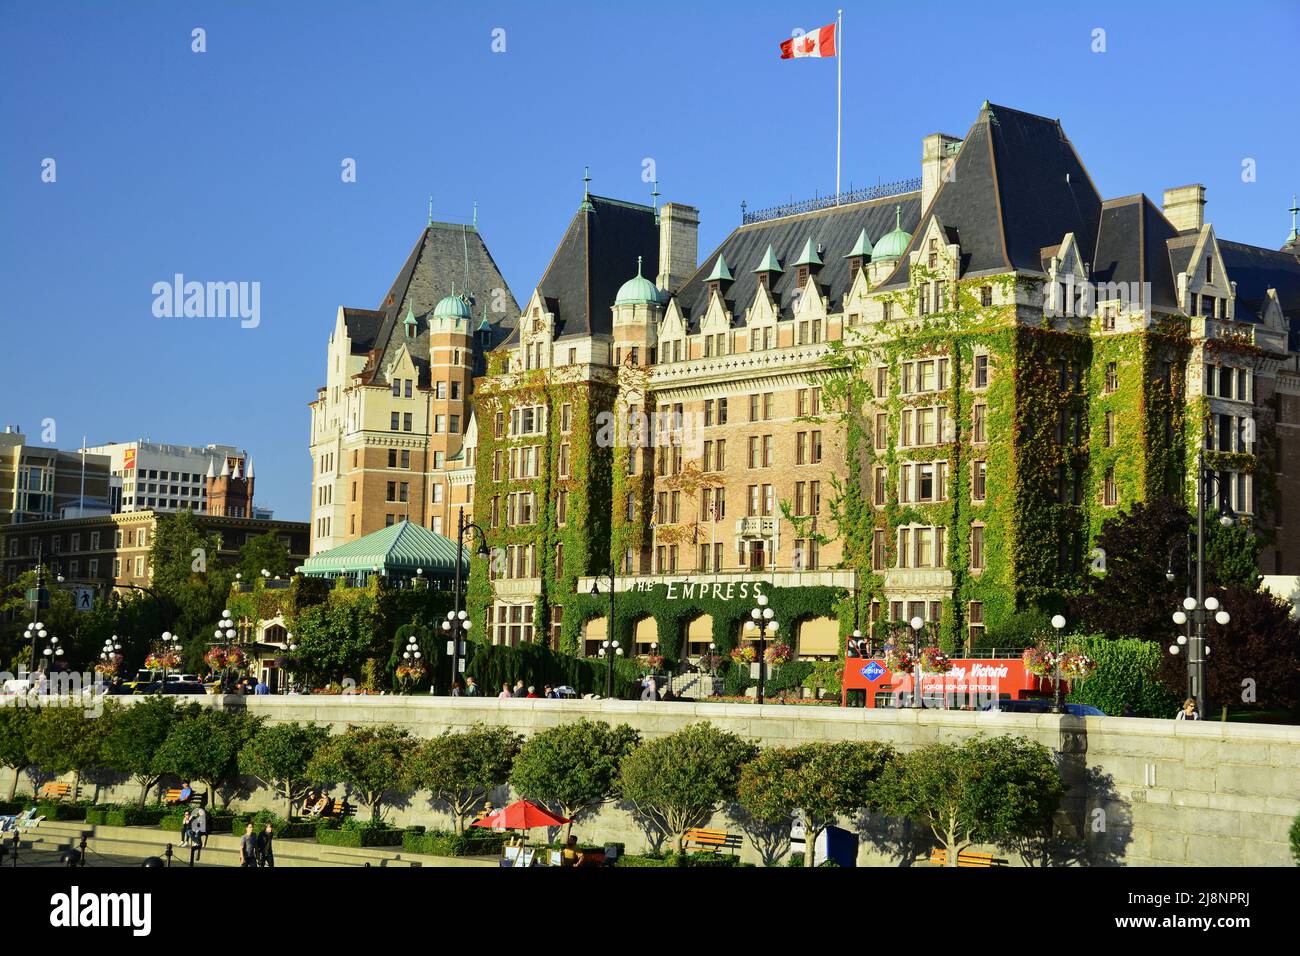 The Empress Hotel in Victoria BC, Canada Stock Photo